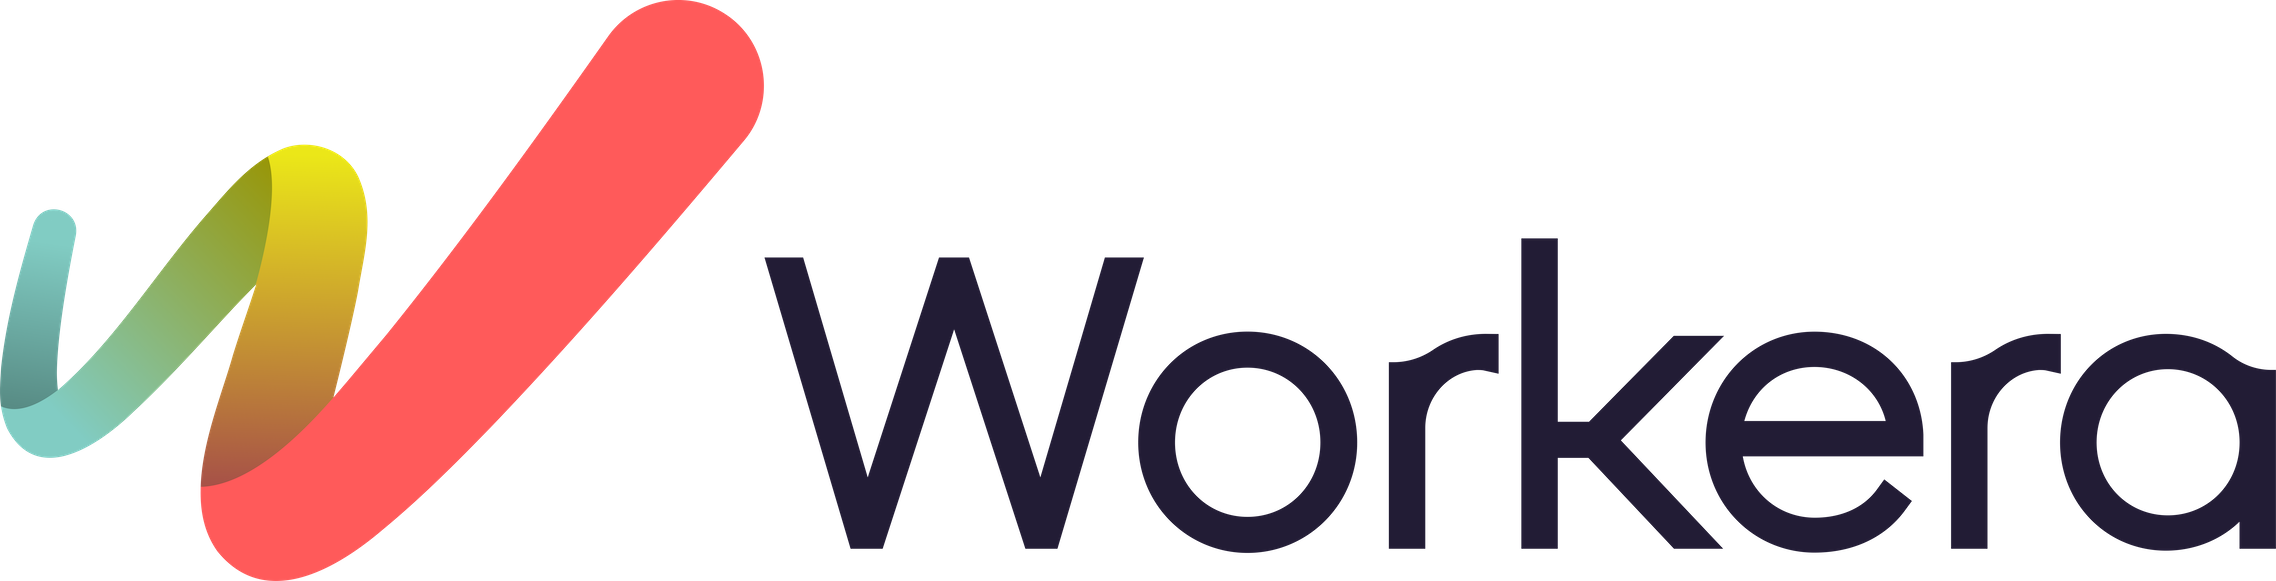 Workera Logo.png